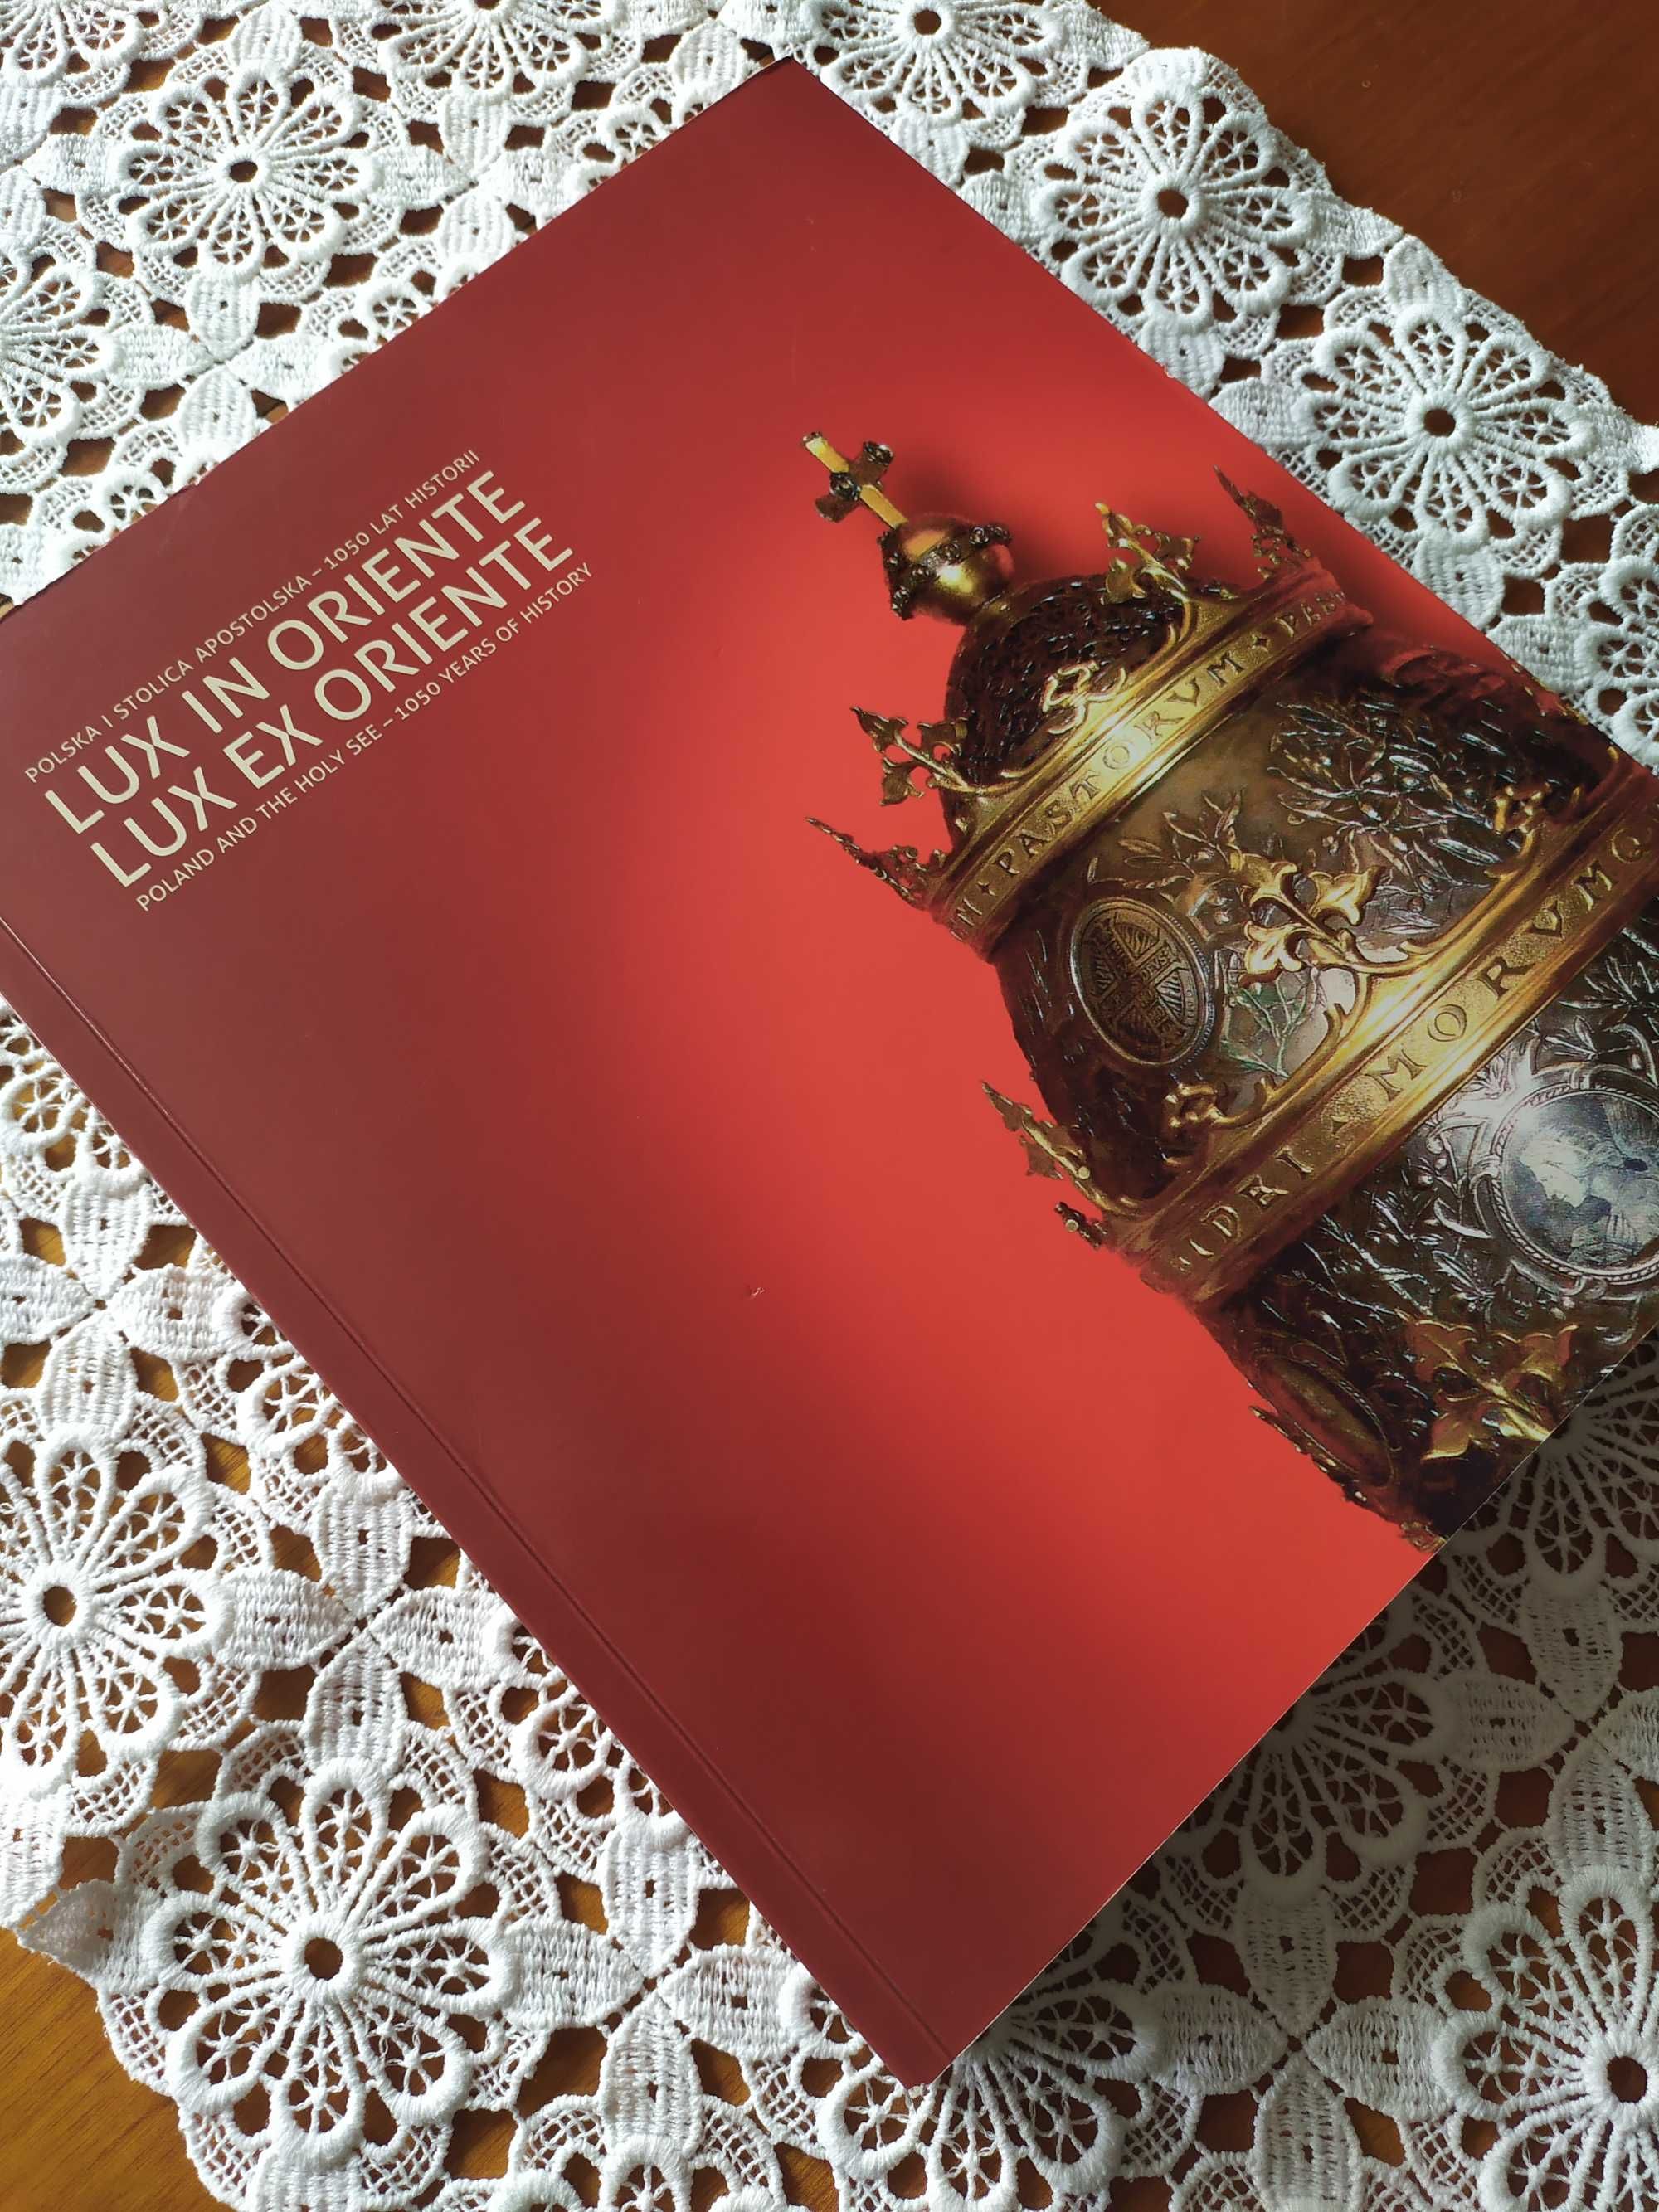 Lux In Oriente Lux Ex Oriente Katalog wystawy  2016 r